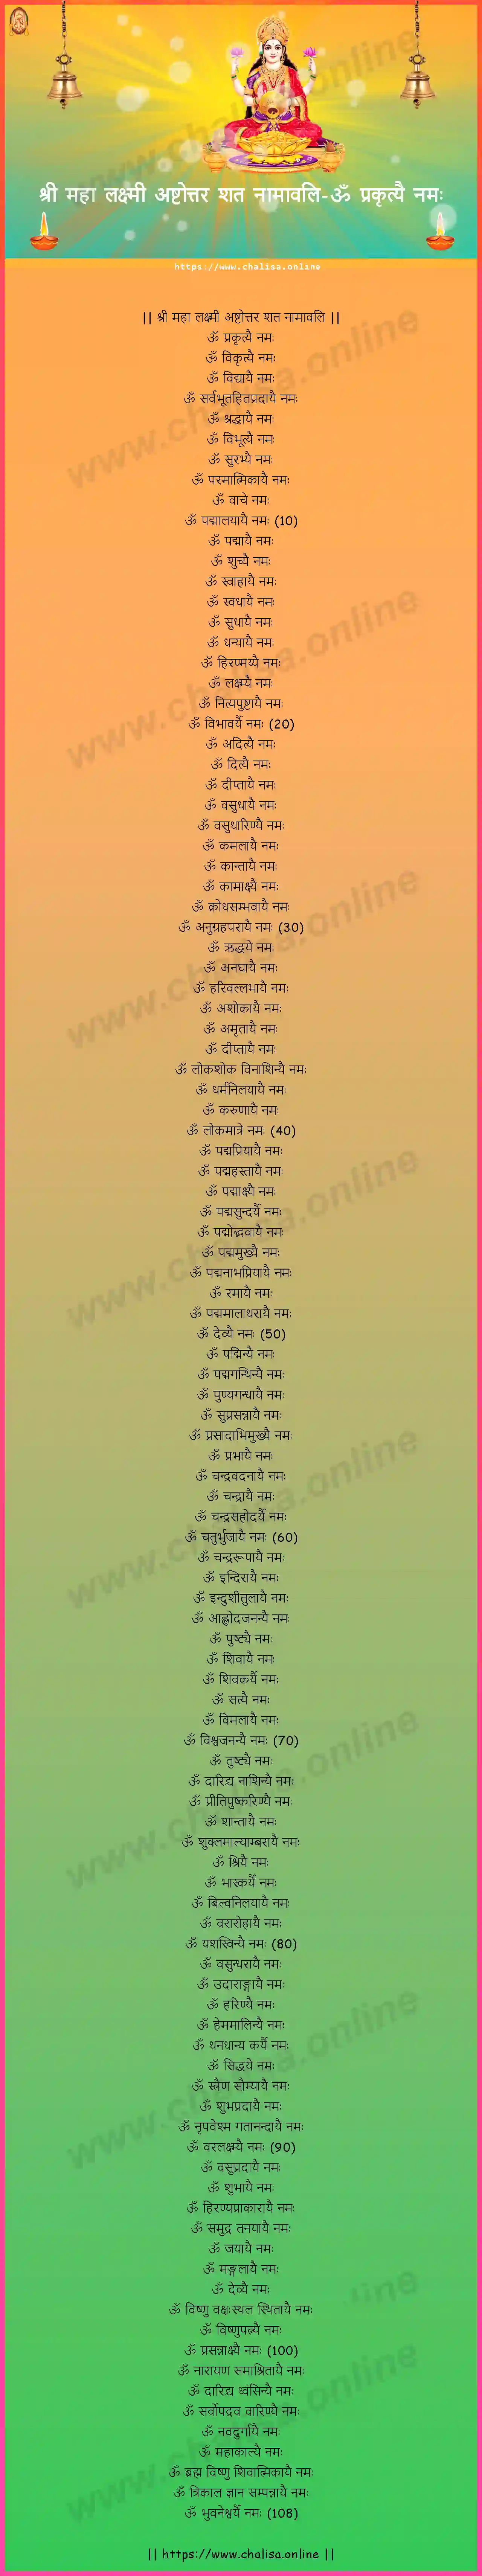 om-prakrtyai-namah-sree-maha-lakshmi-ashtottara-sata-naamaavali-sanskrit-sanskrit-lyrics-download